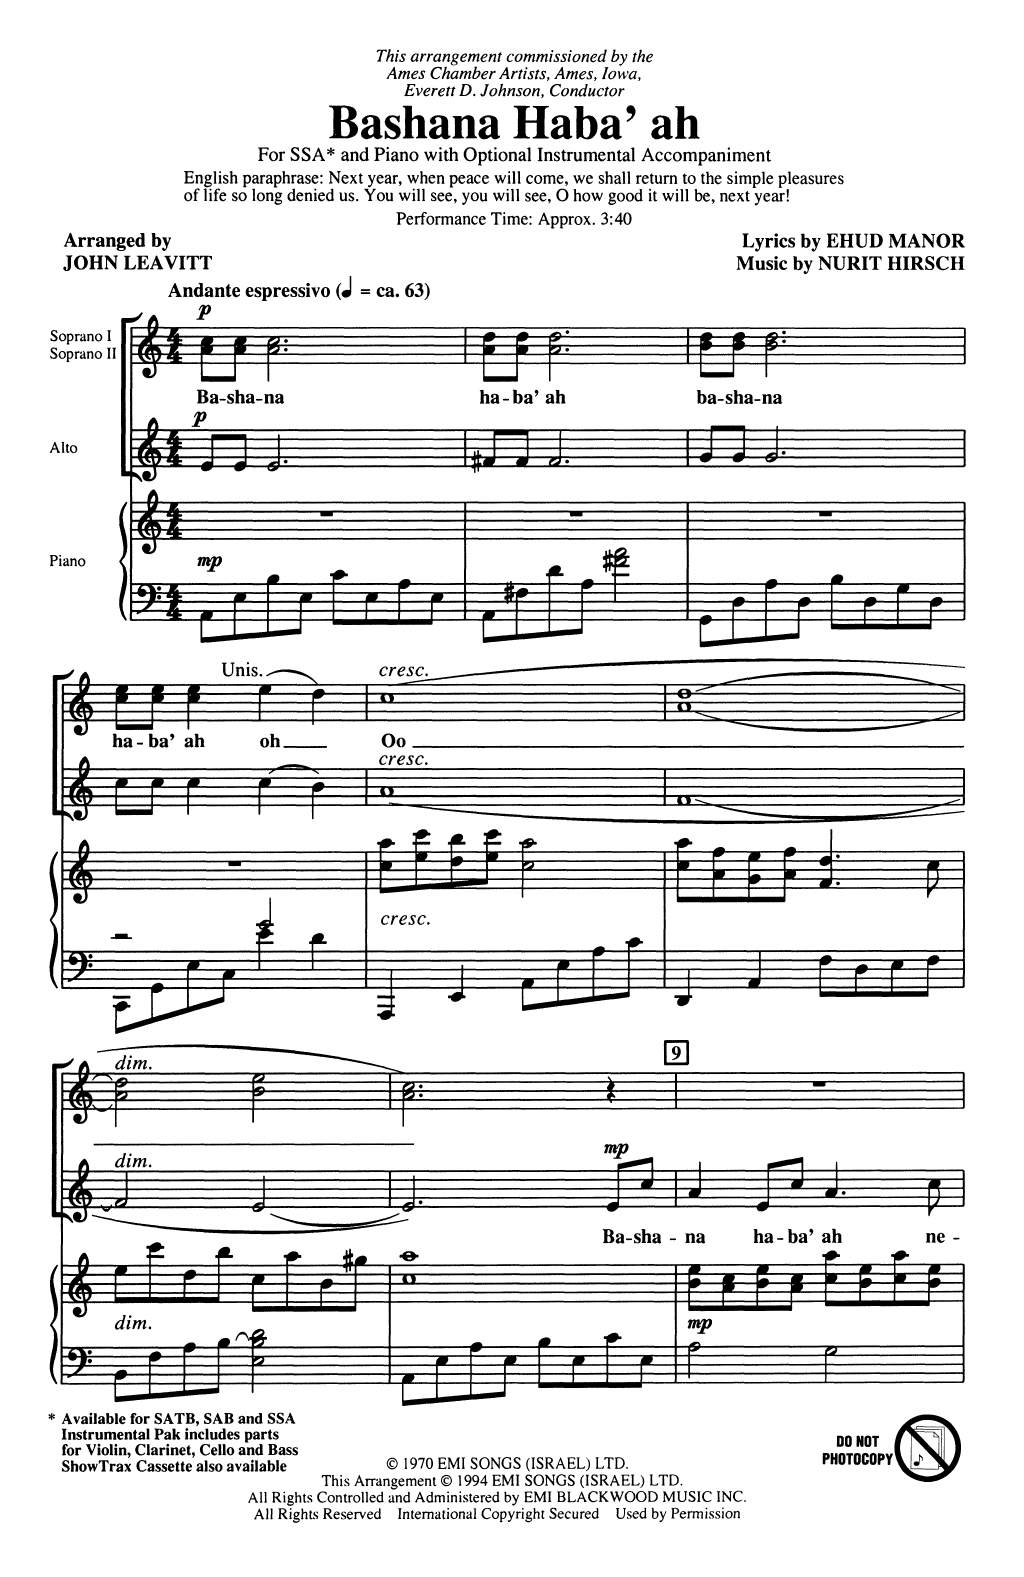 Nurit Hirsh Bashana Haba'ah (arr. John Leavitt) sheet music notes printable PDF score